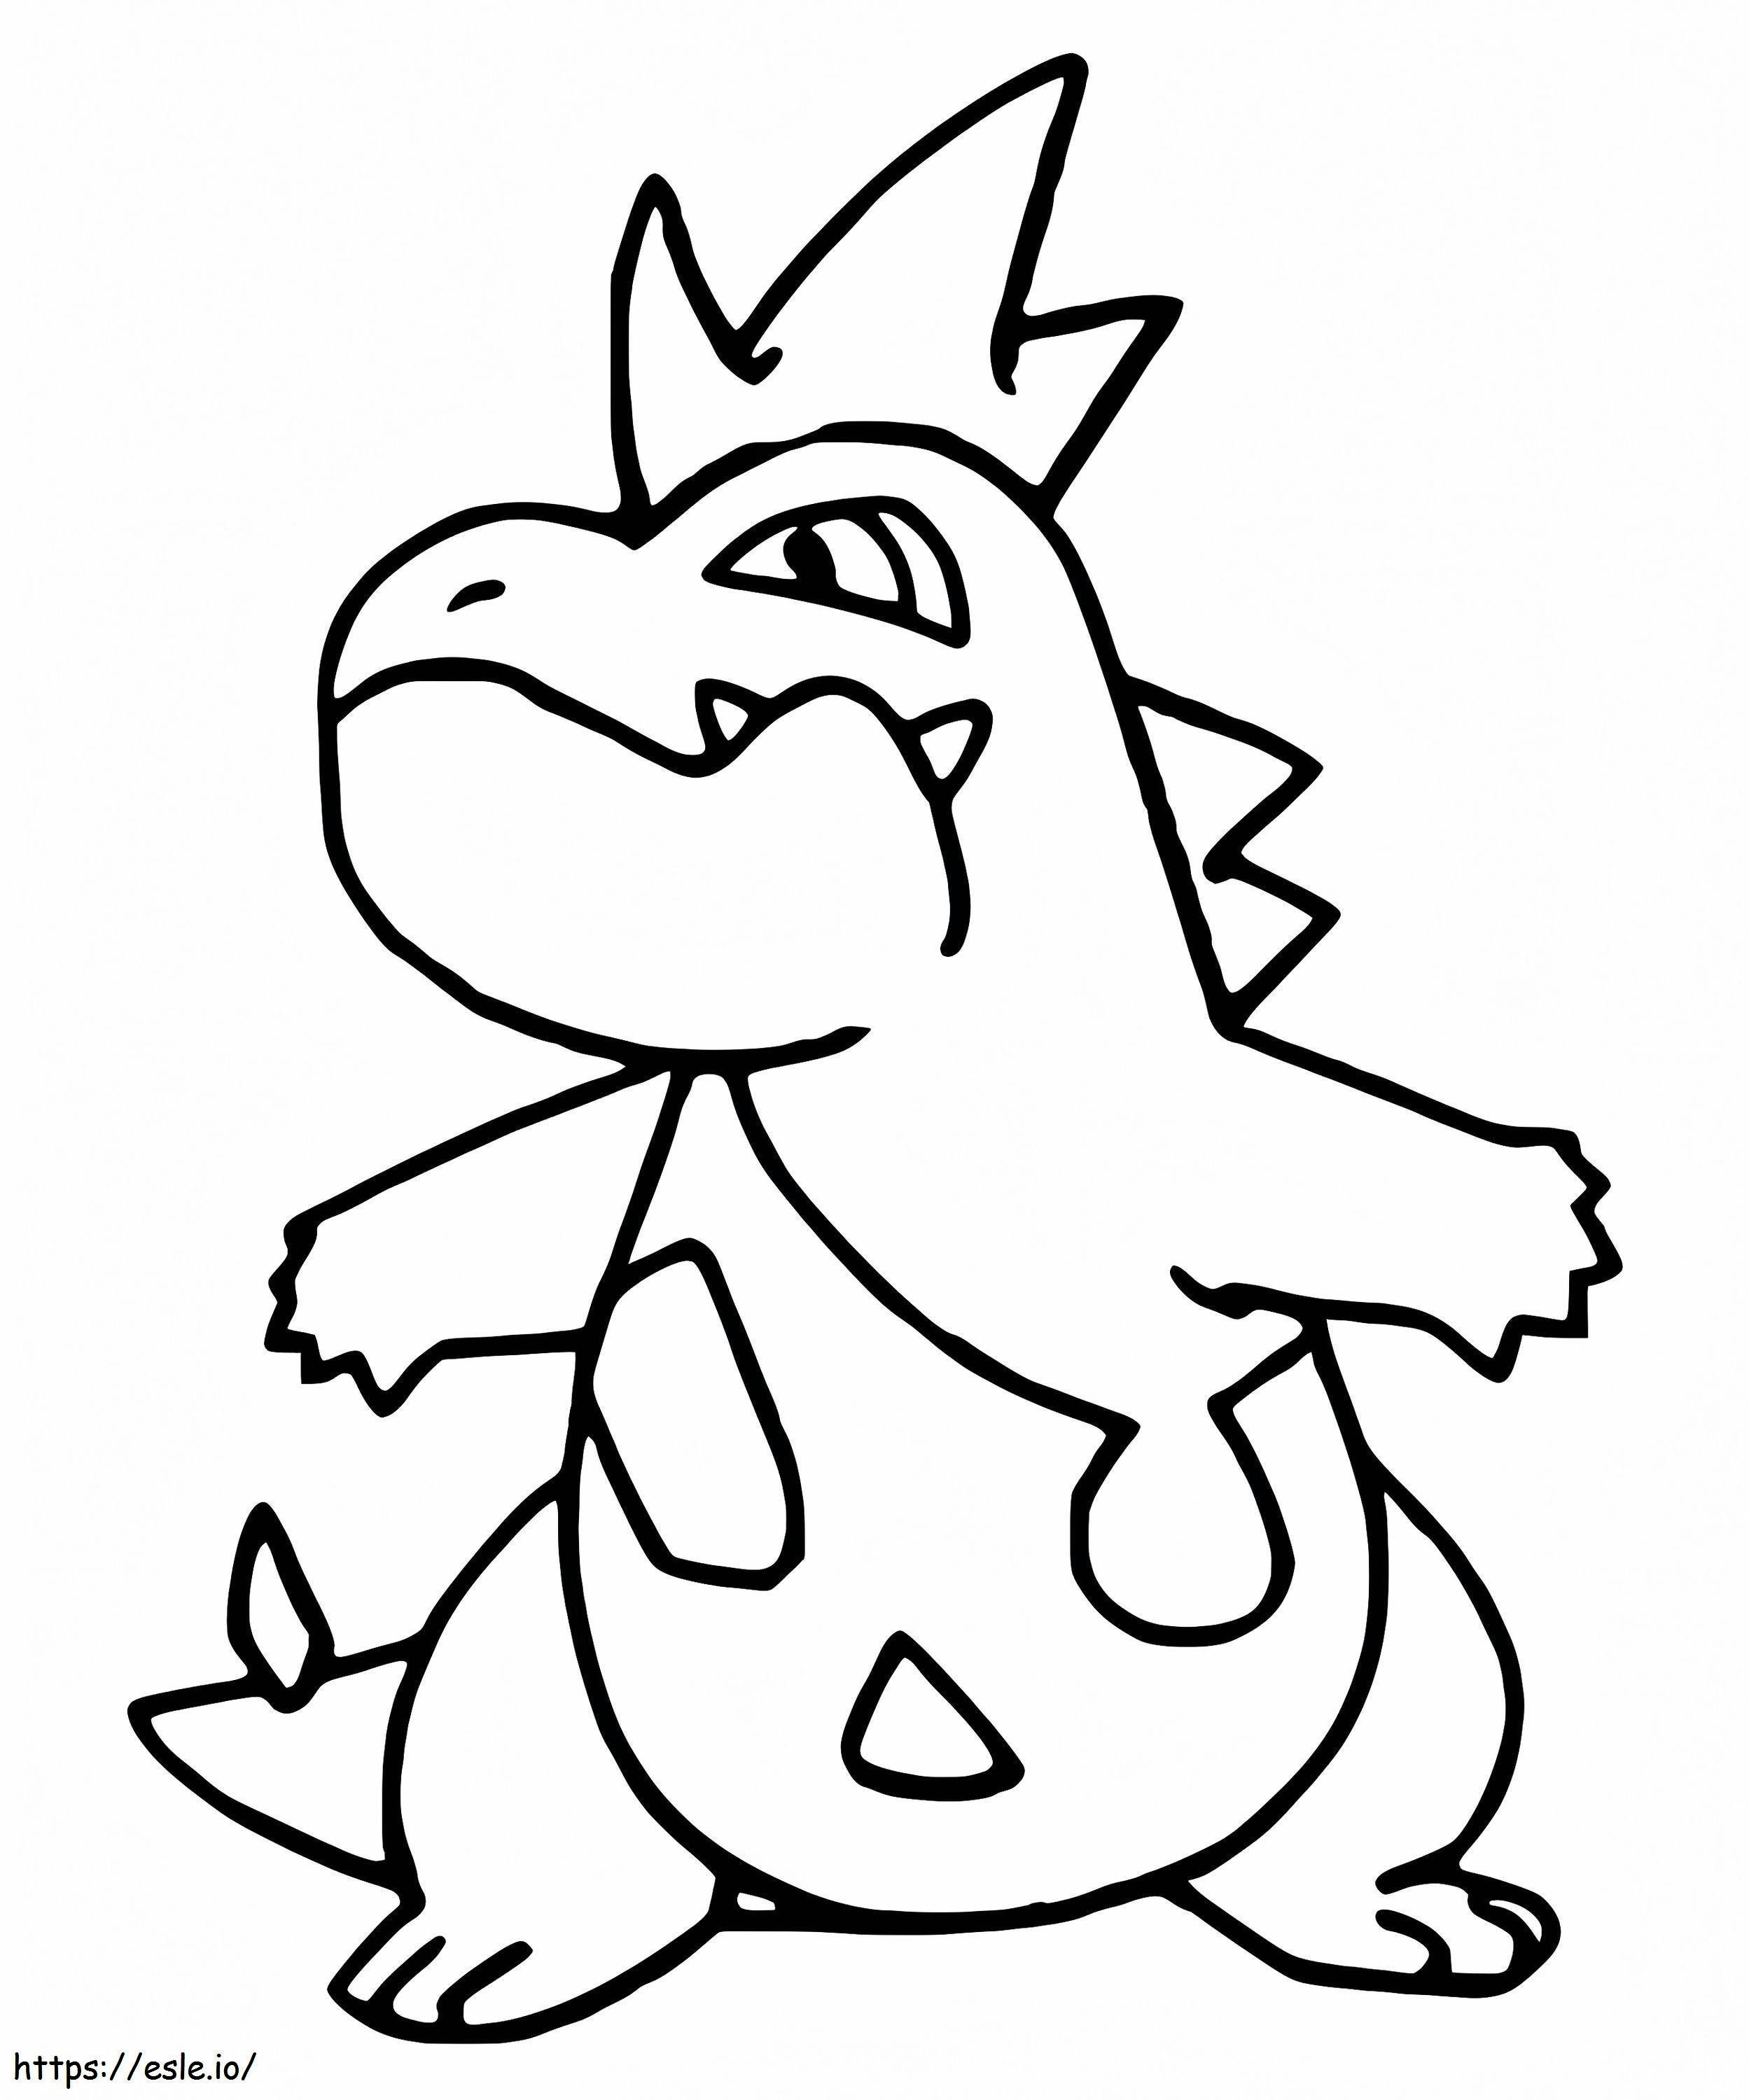 Coloriage Pokémon Croconaw Gen 2 à imprimer dessin